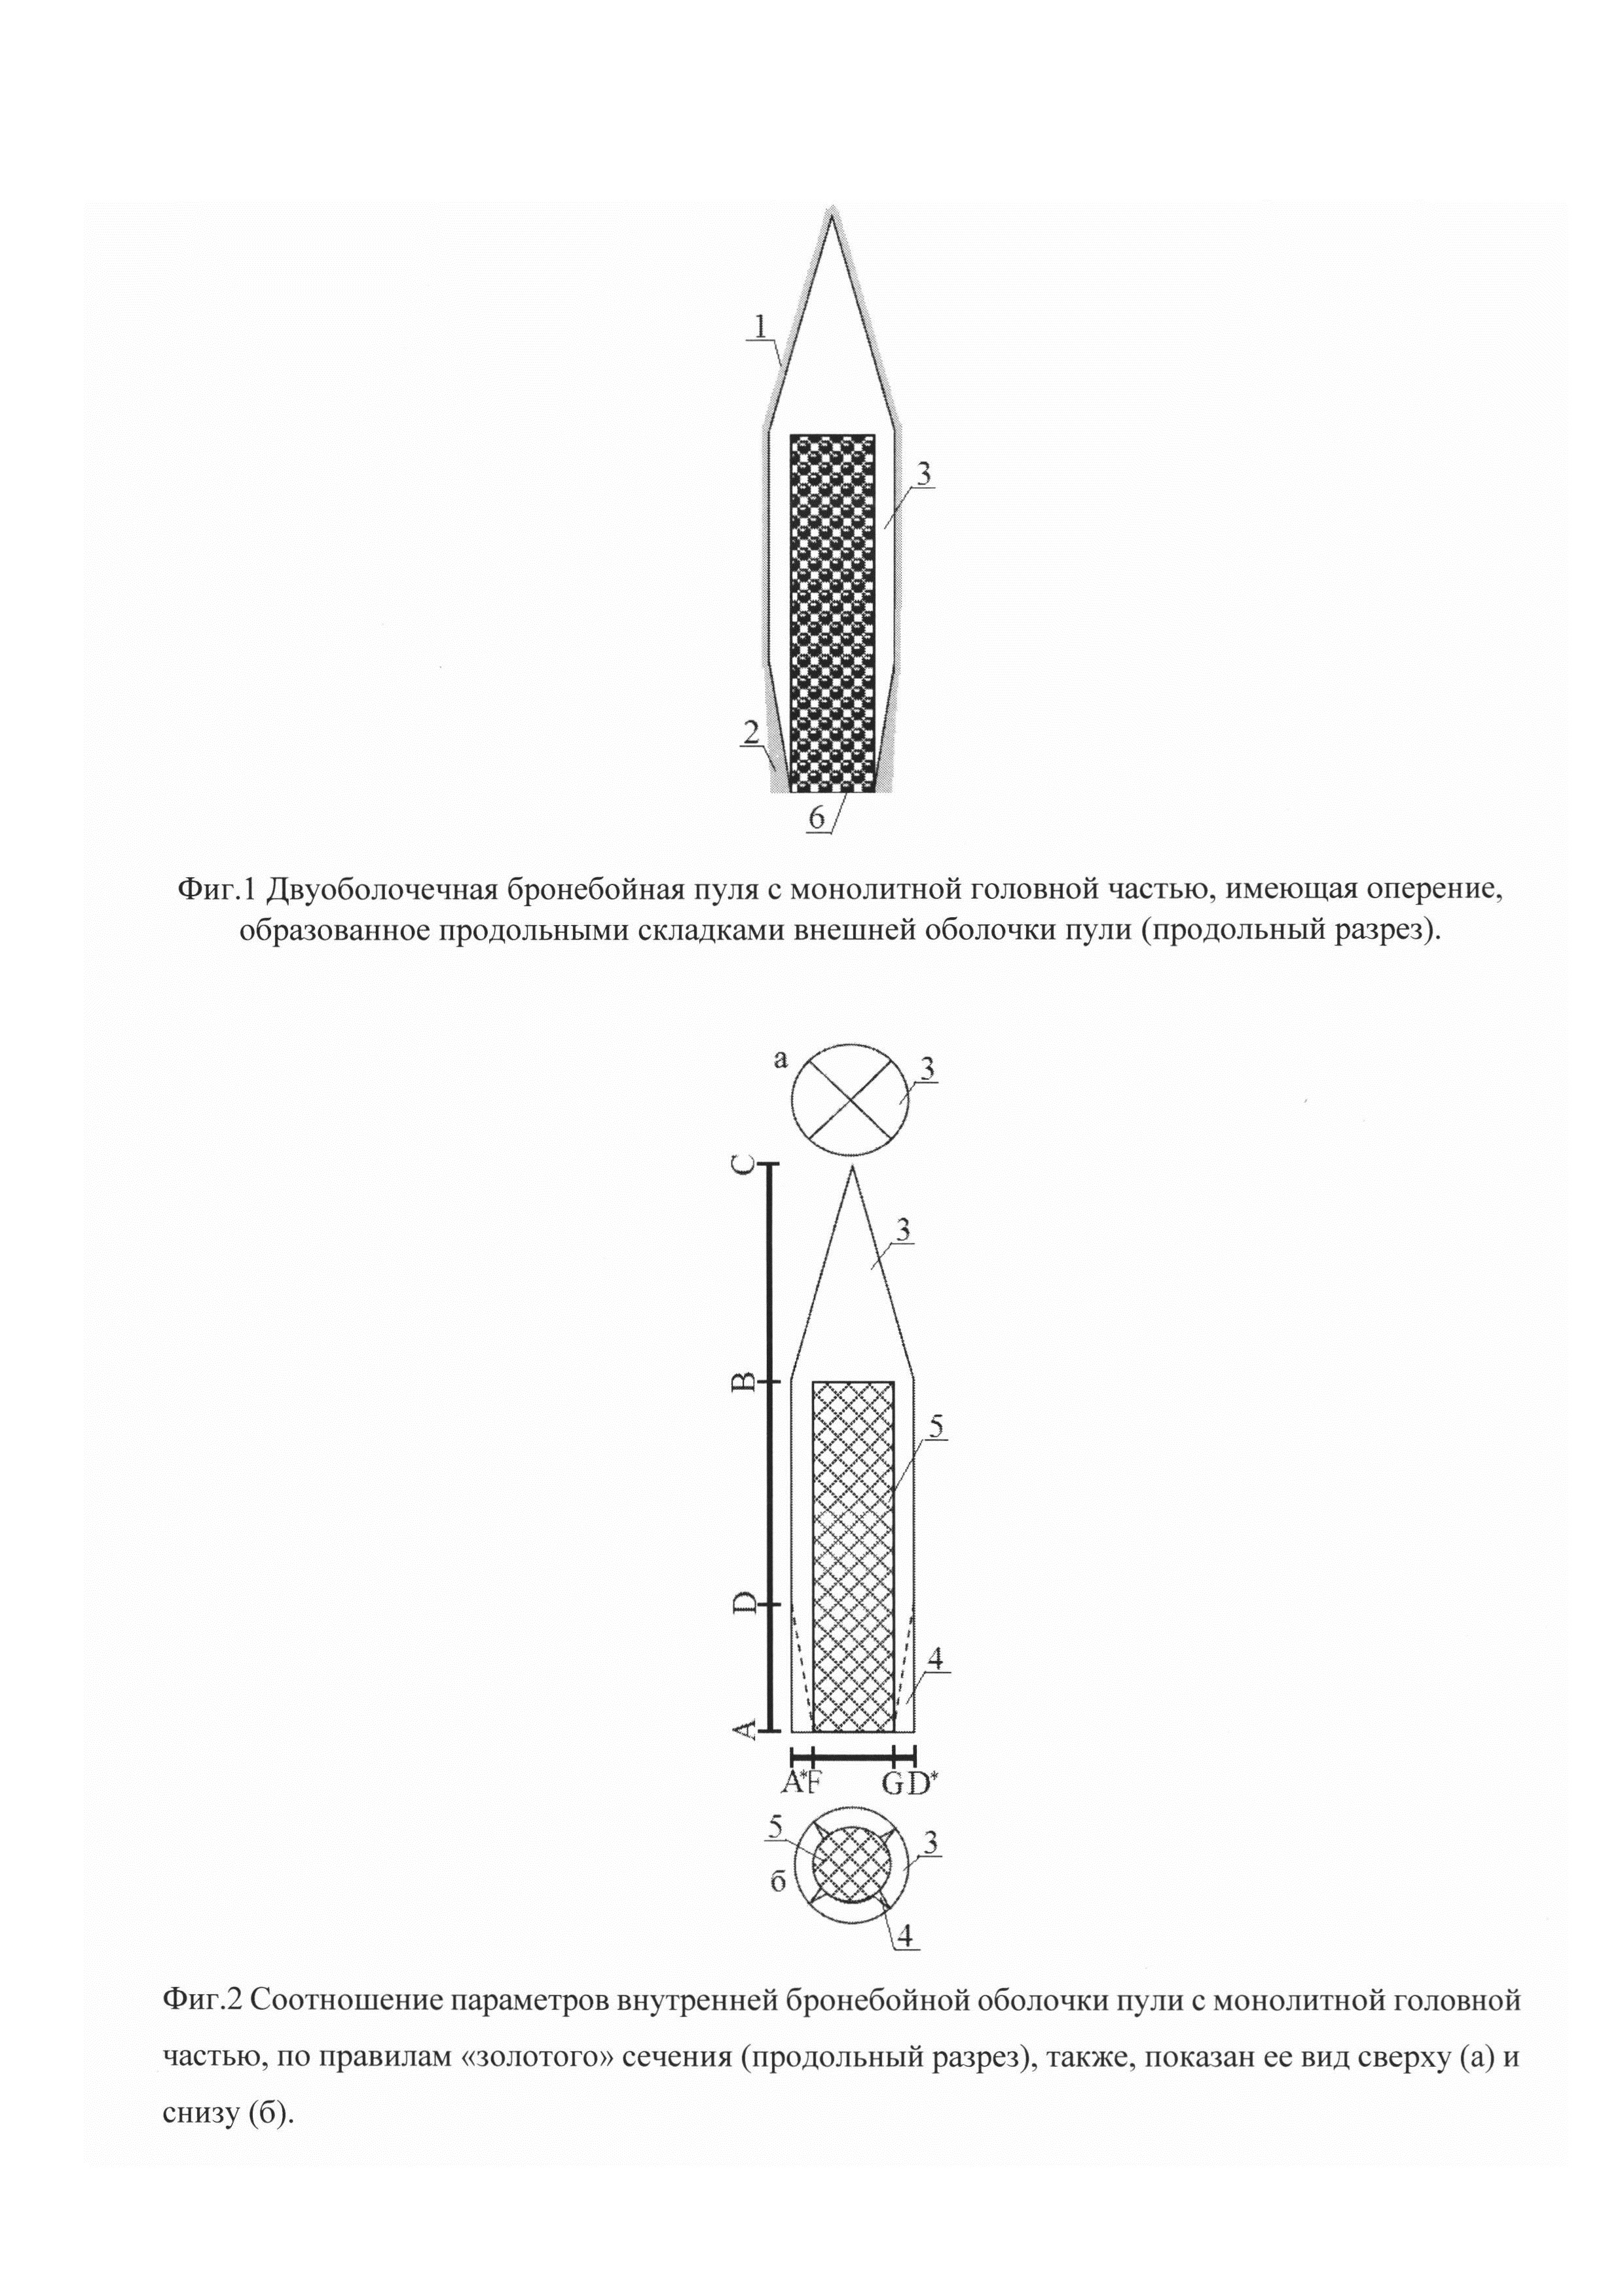 Двуоболочечная бронебойная пуля для нарезного и гладкоствольного огнестрельного оружия